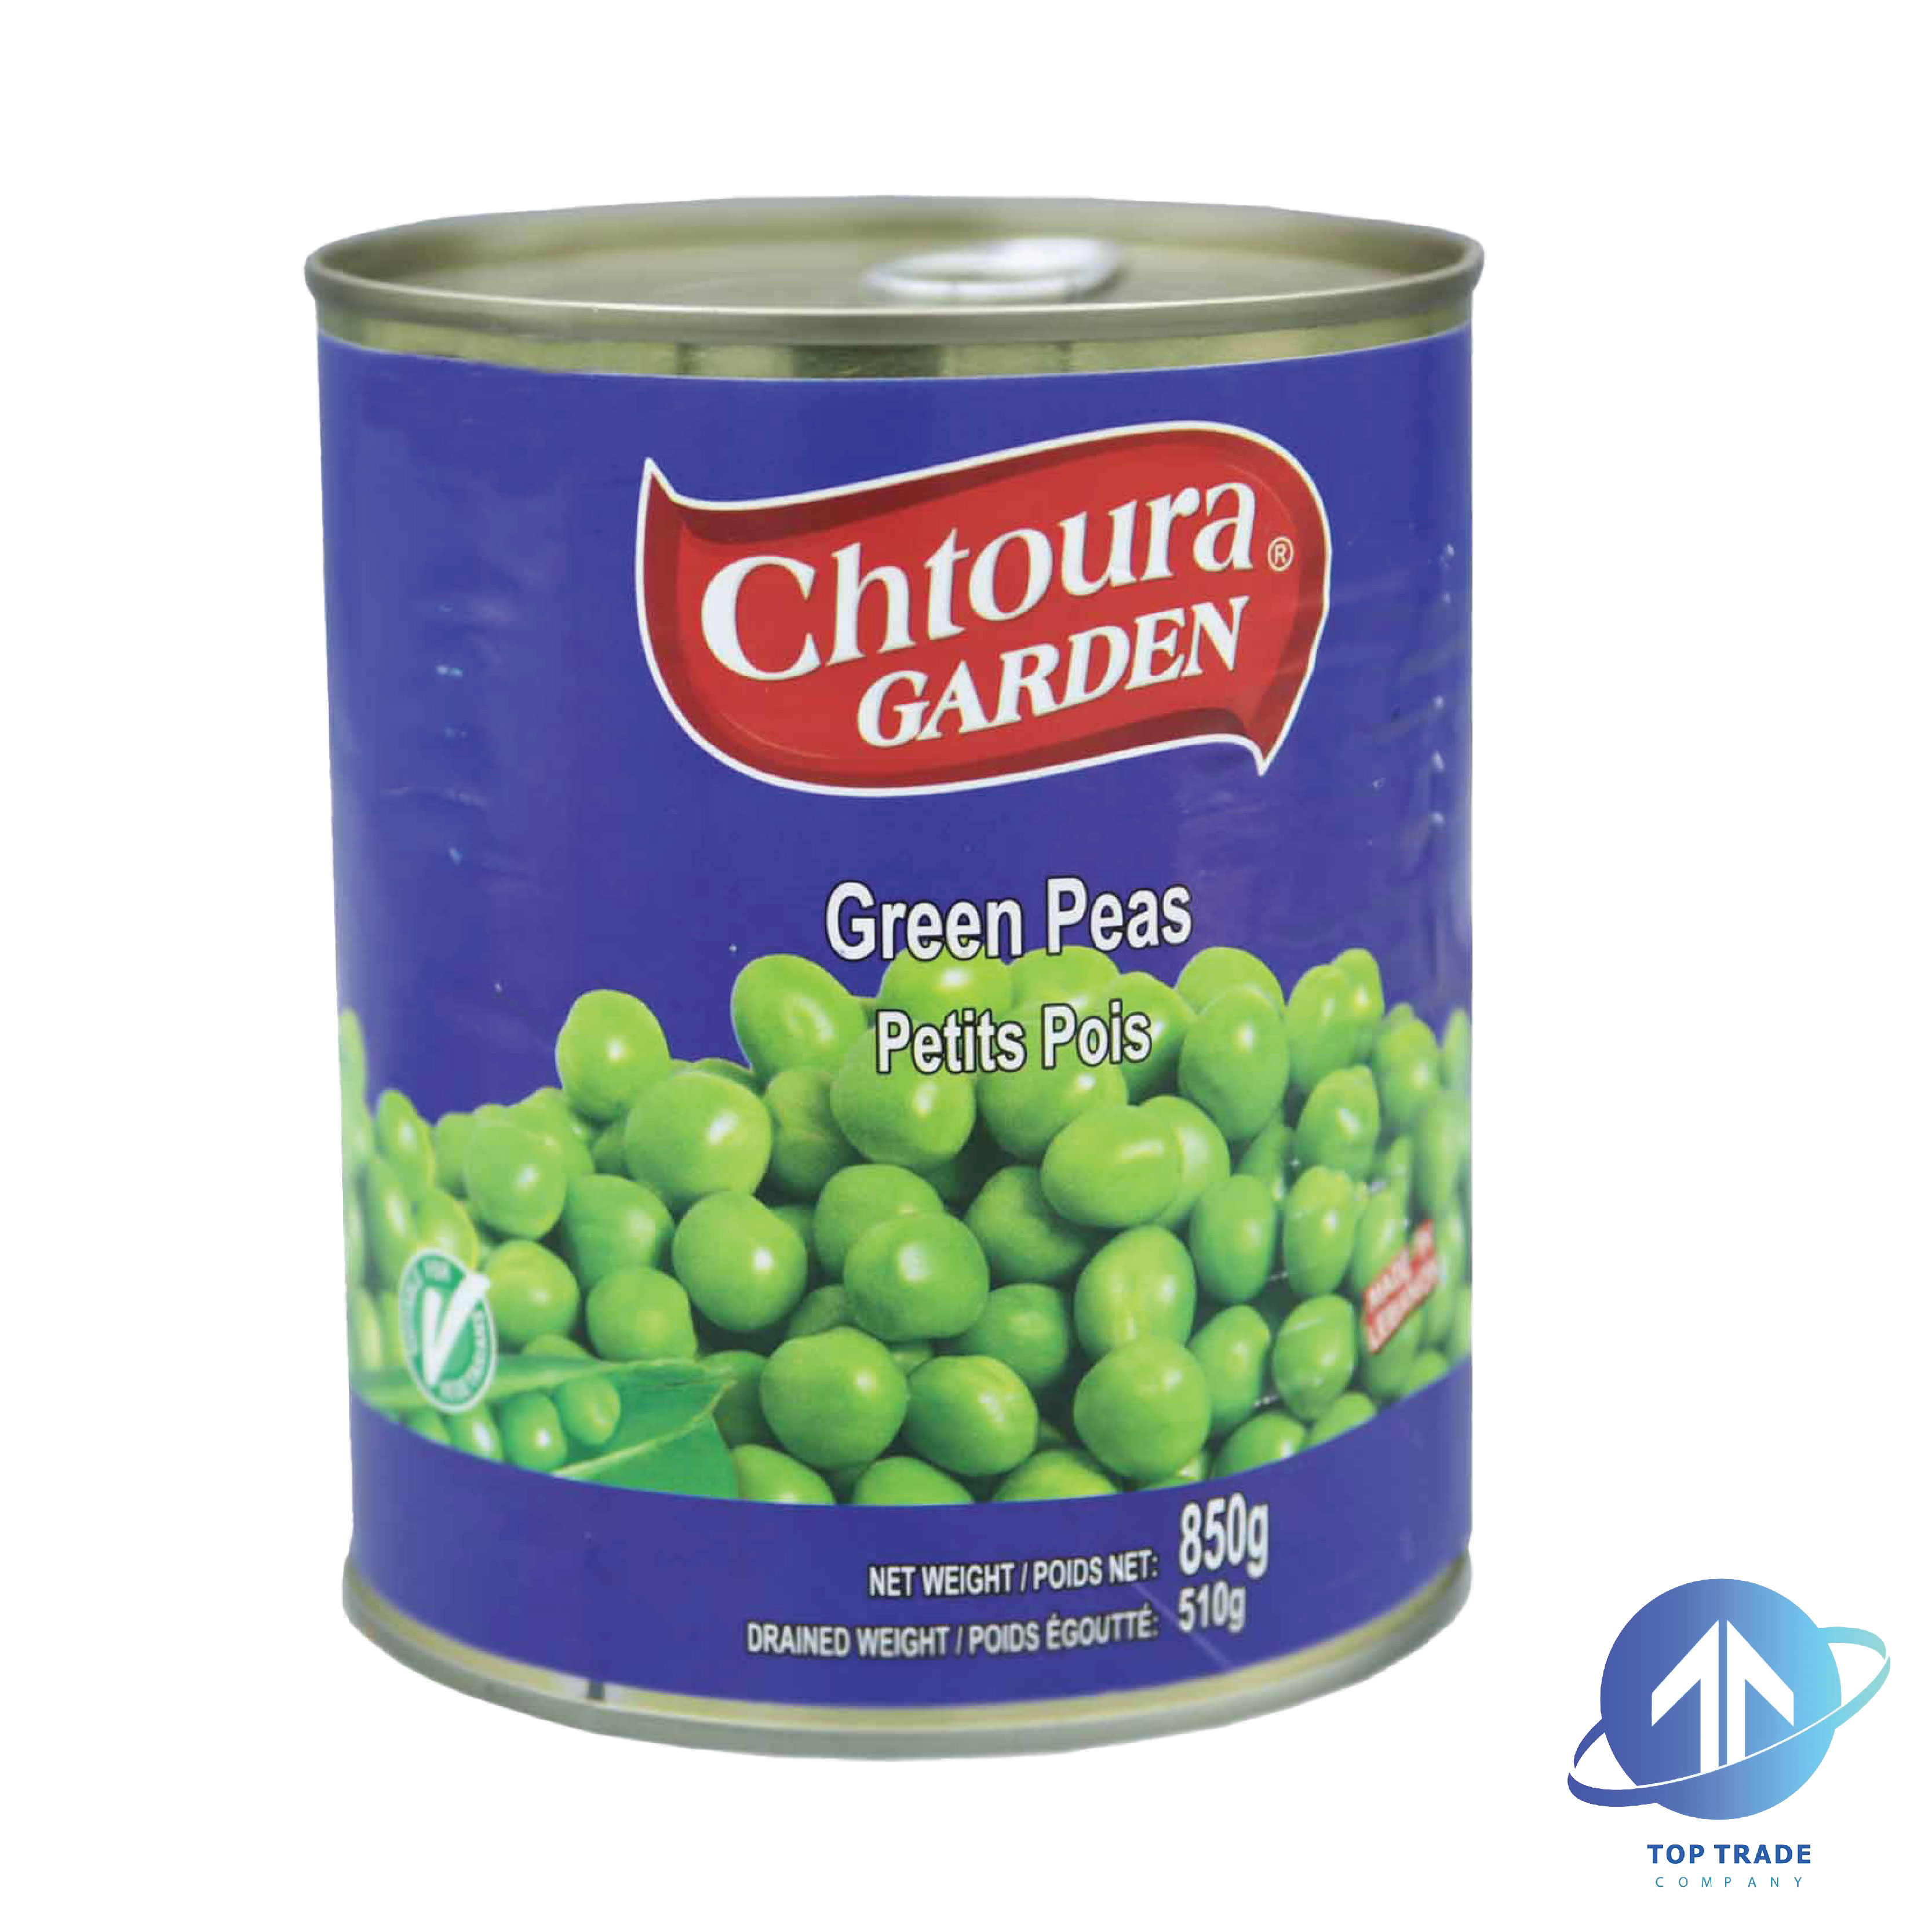 Chtoura Garden Green Peas 850gr